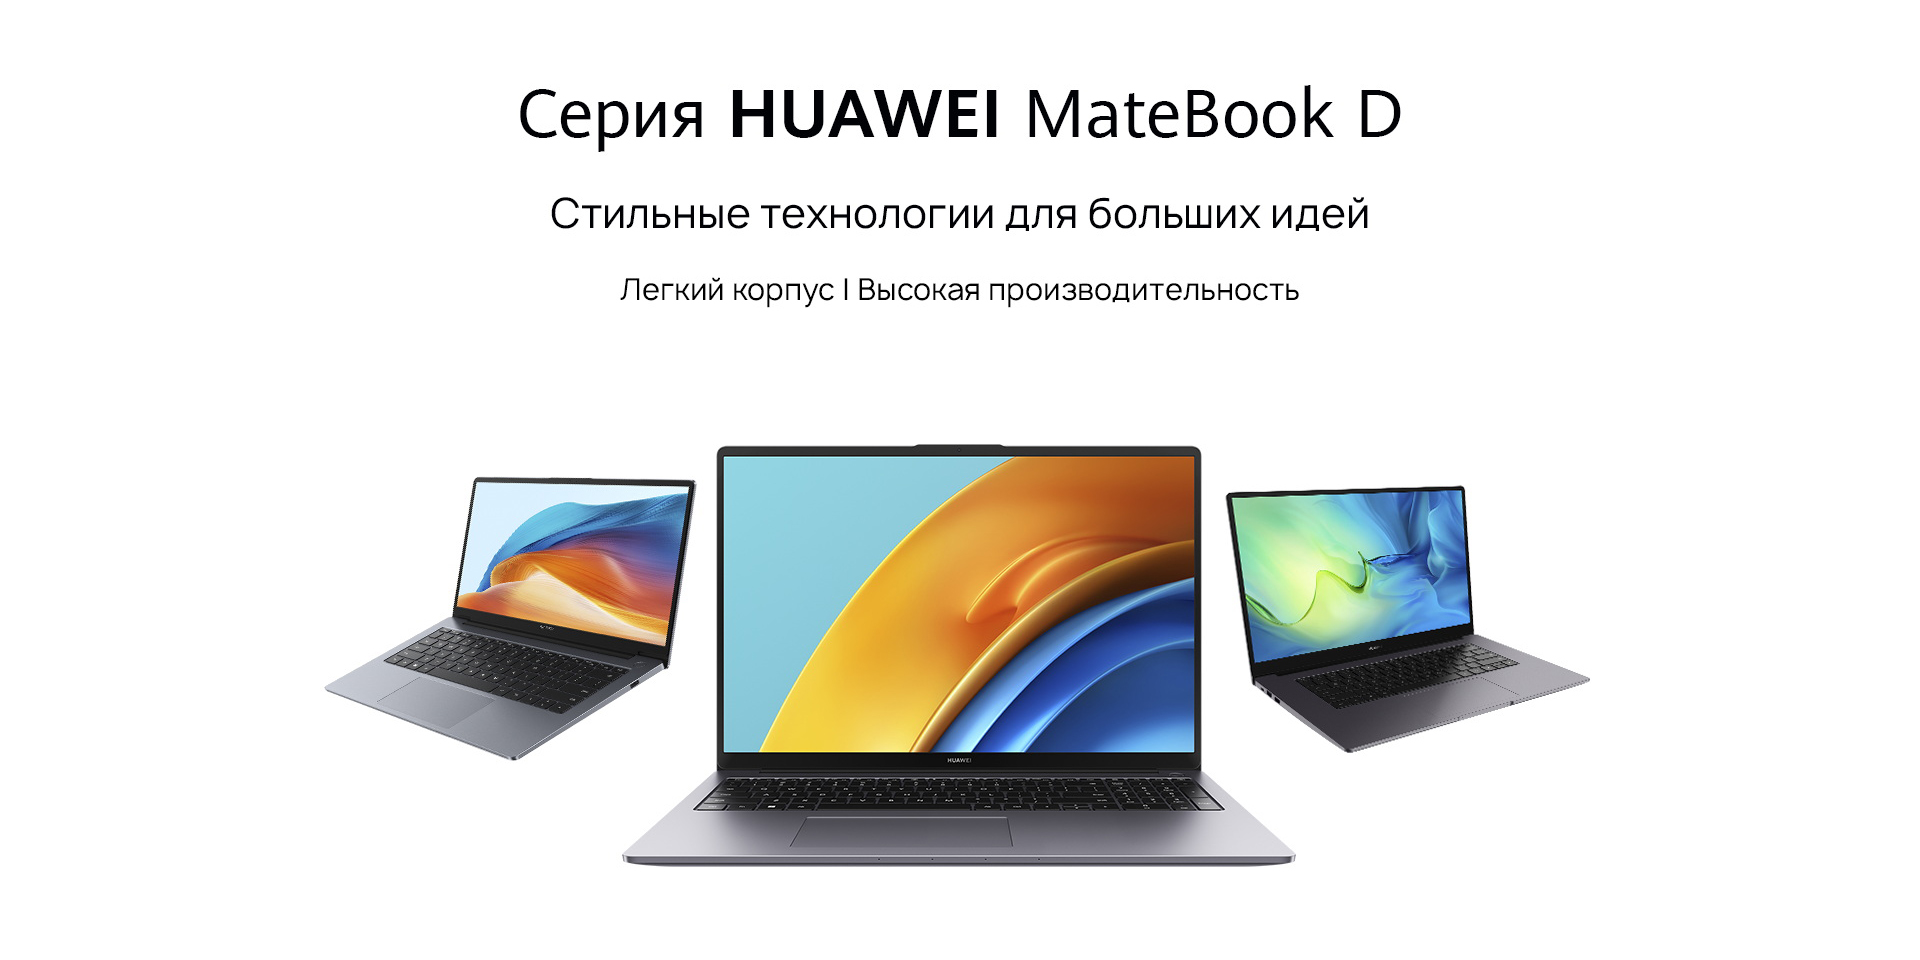 Белорусам предложили ноутбуки и смартфоны Huawei с выгодой до 400 рублей